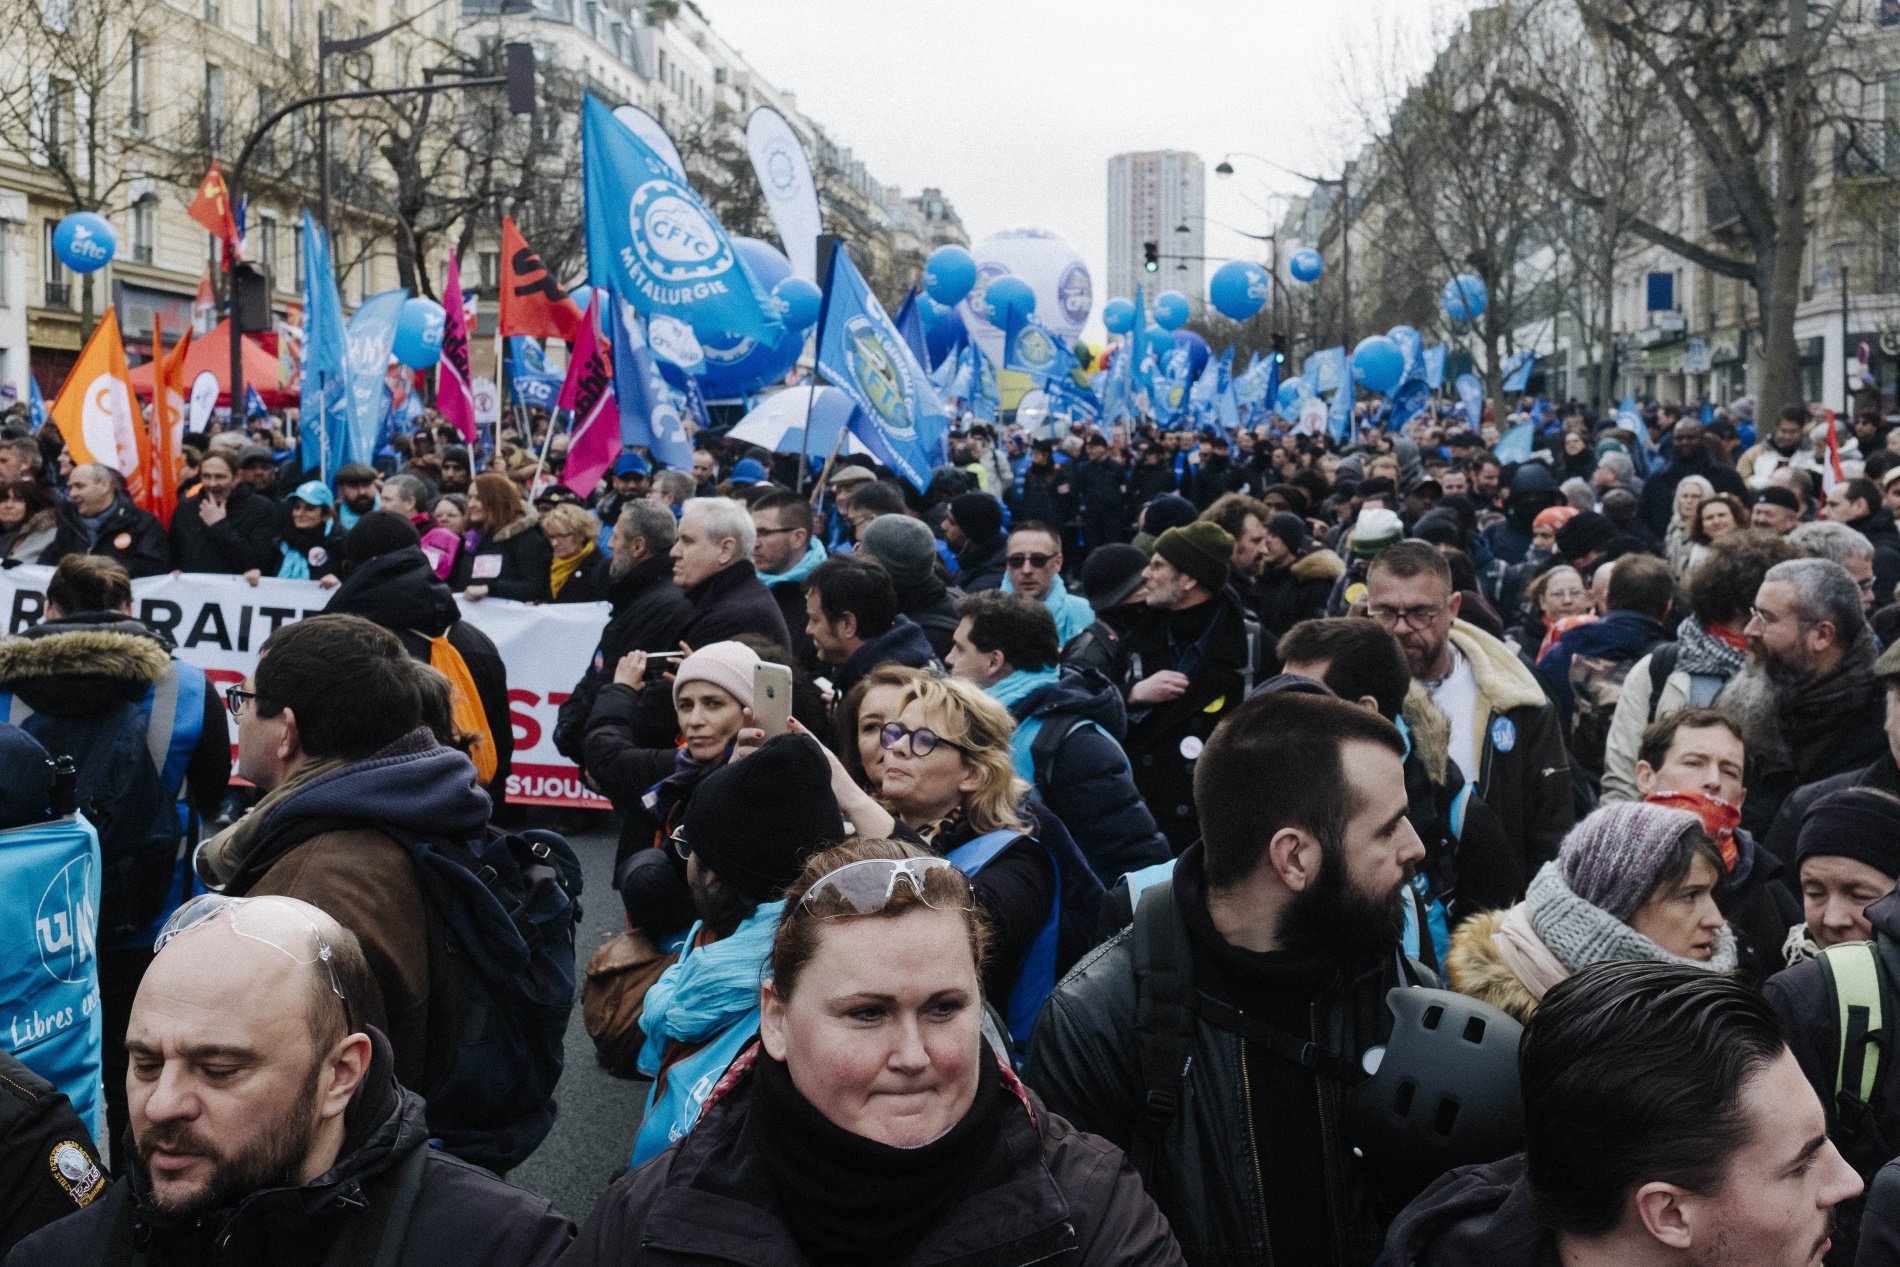 Cuarta jornada de protestas contra la reforma de pensiones de Macron: se esperan movilizaciones masivas